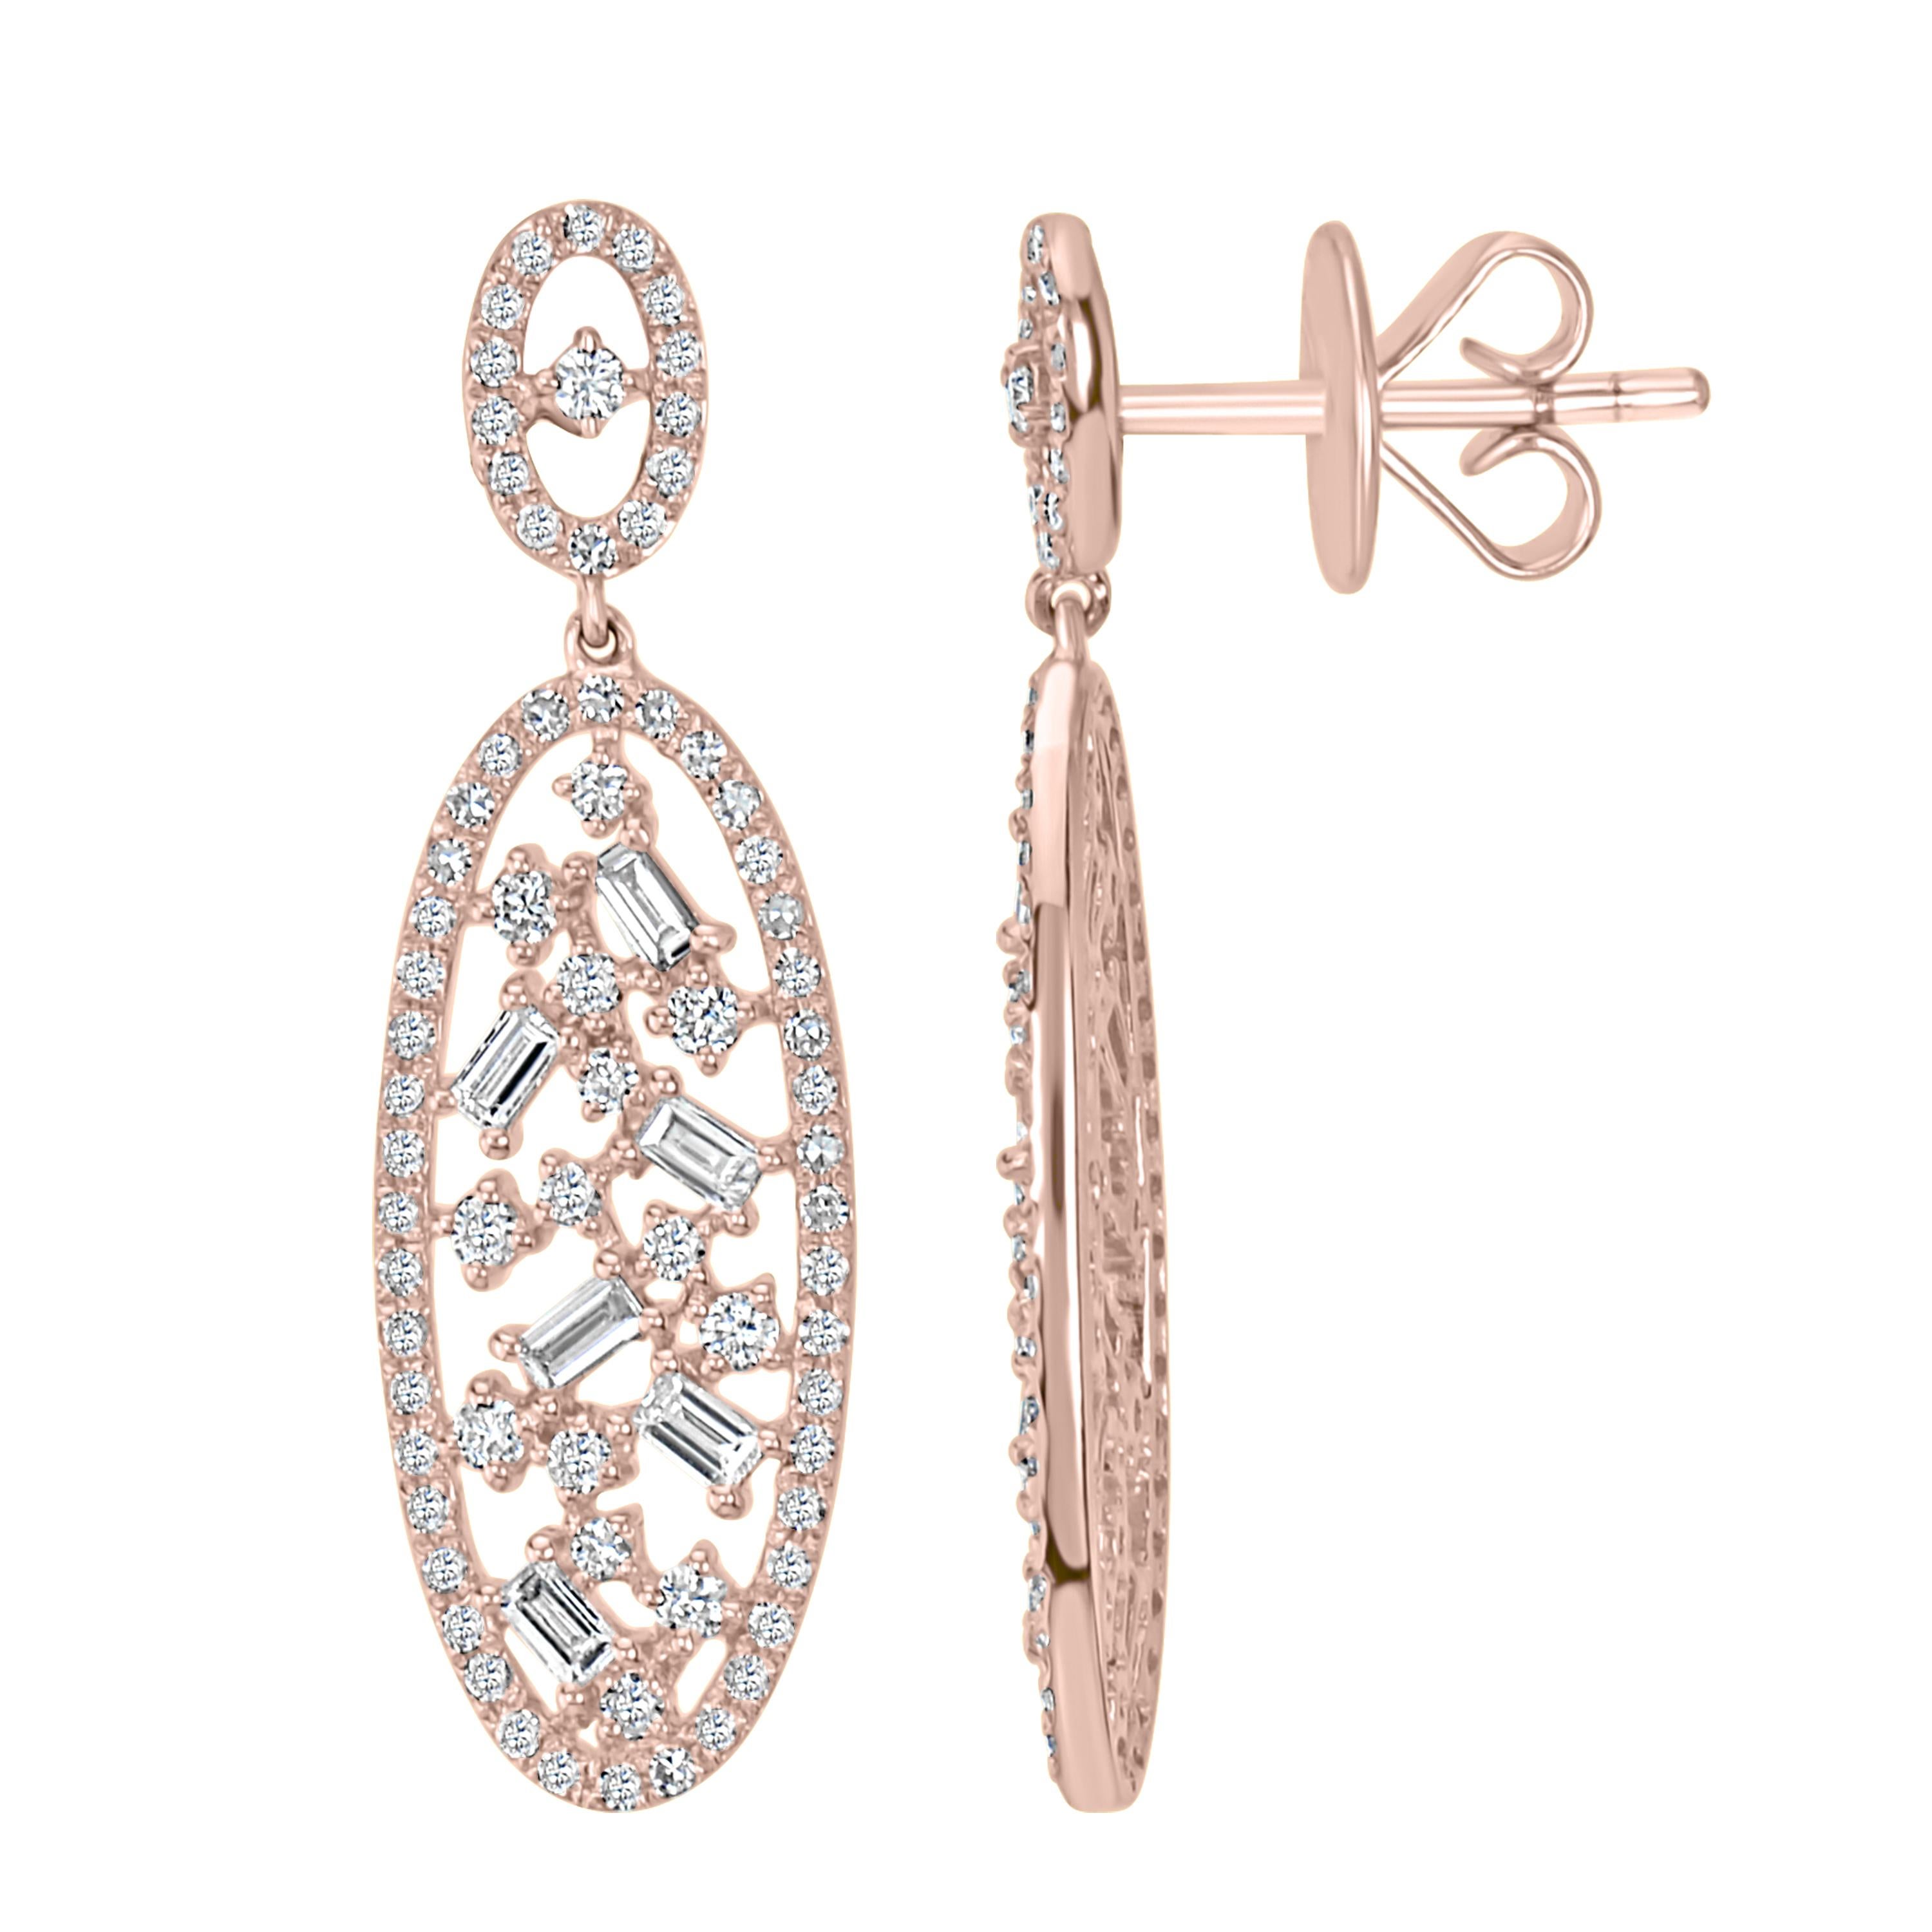 Baguette Cut Luxle 1.04cttw Diamond Oval Drop Earrings in 18k Rose Gold For Sale